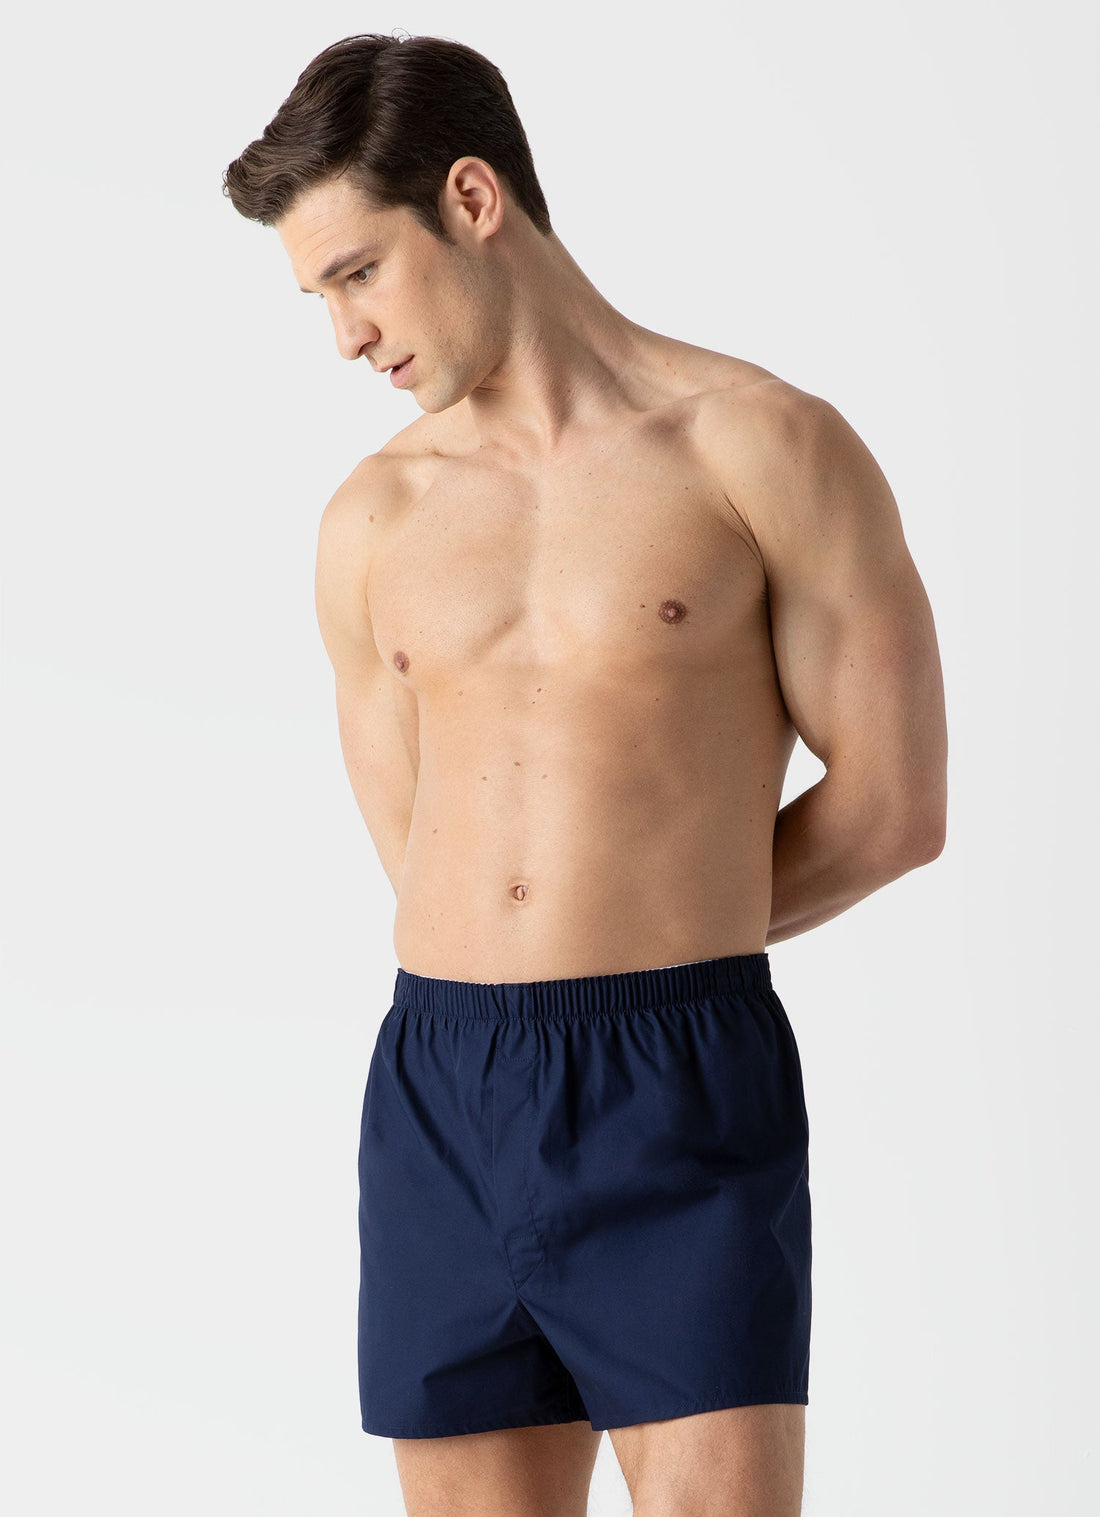 New Man Underwears Boxer Brief Underwear Shorts M L XL XXL Size Navy Gray  White